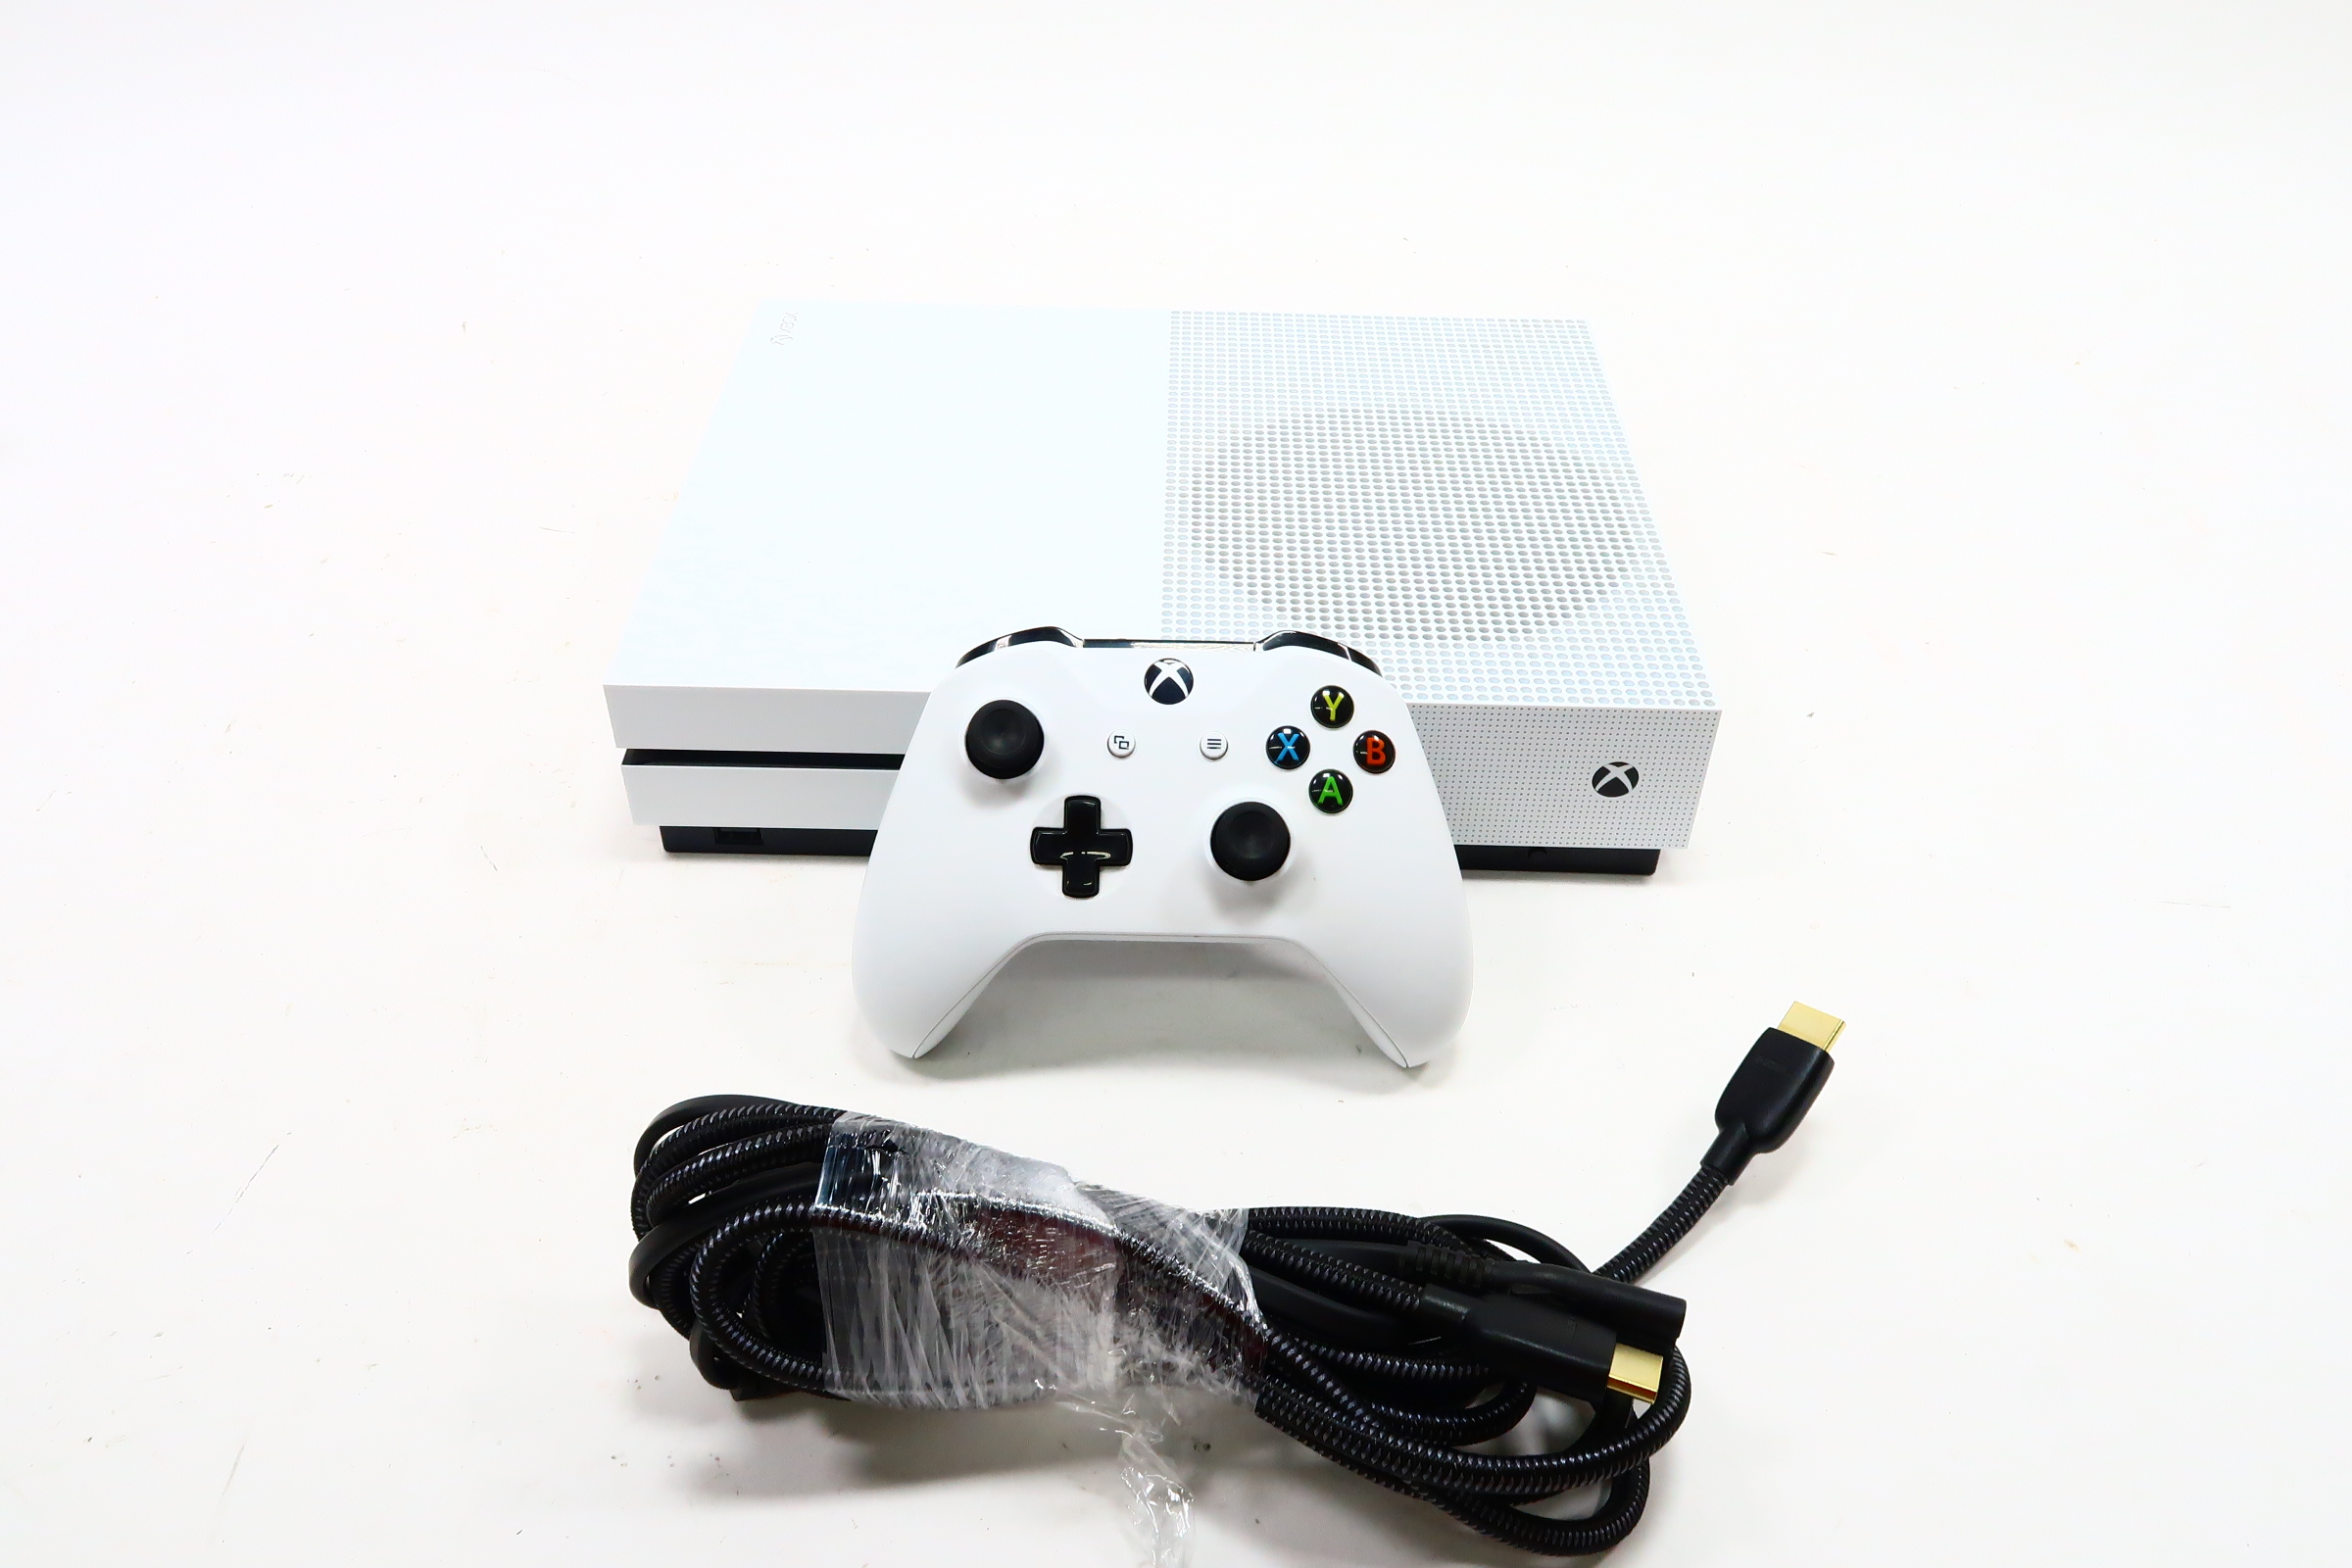 Microsoft Xbox One S 1TB Console, White, 234-01249 